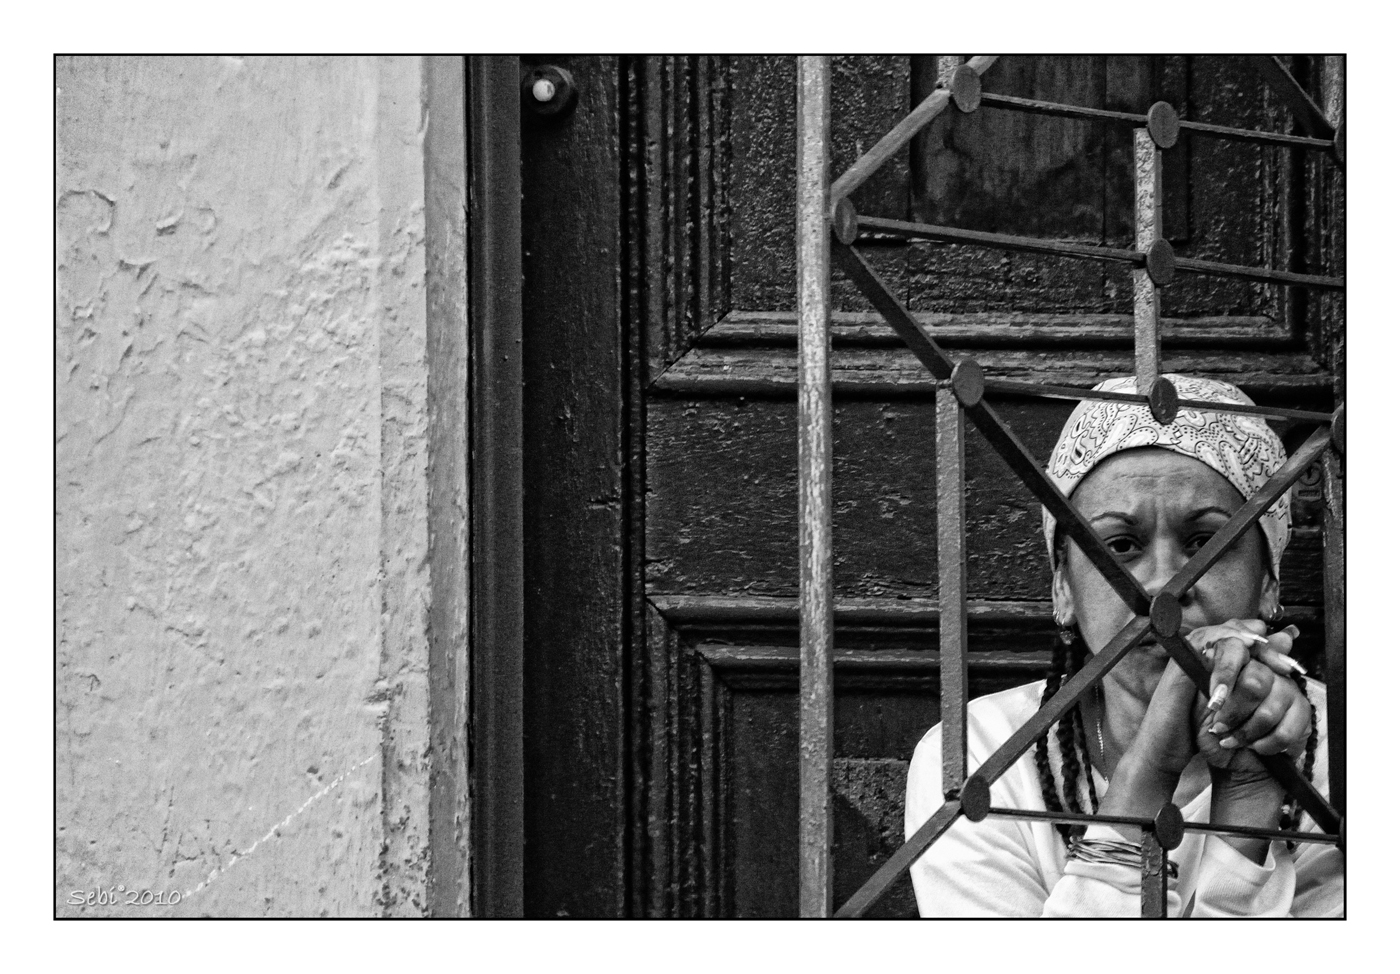 Cuba en blanco y negro - rid - 037.jpg